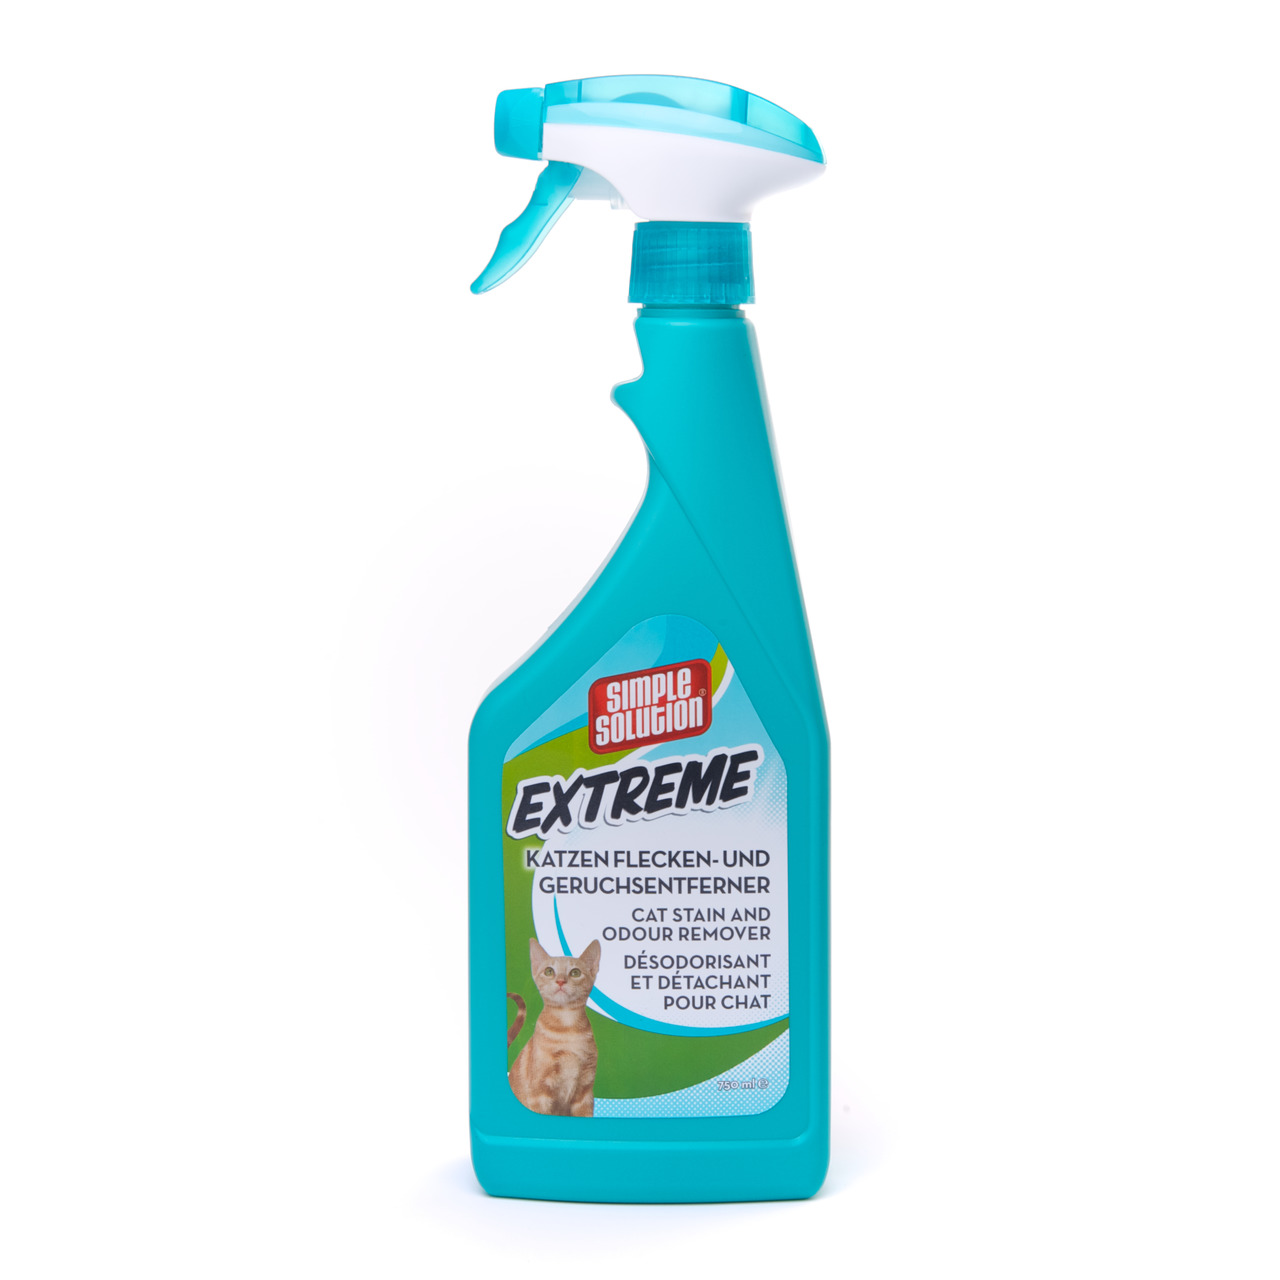 Simple Solution Extreme Katzen Flecken- und Geruchsentferner Katzen Hygiene 750 ml